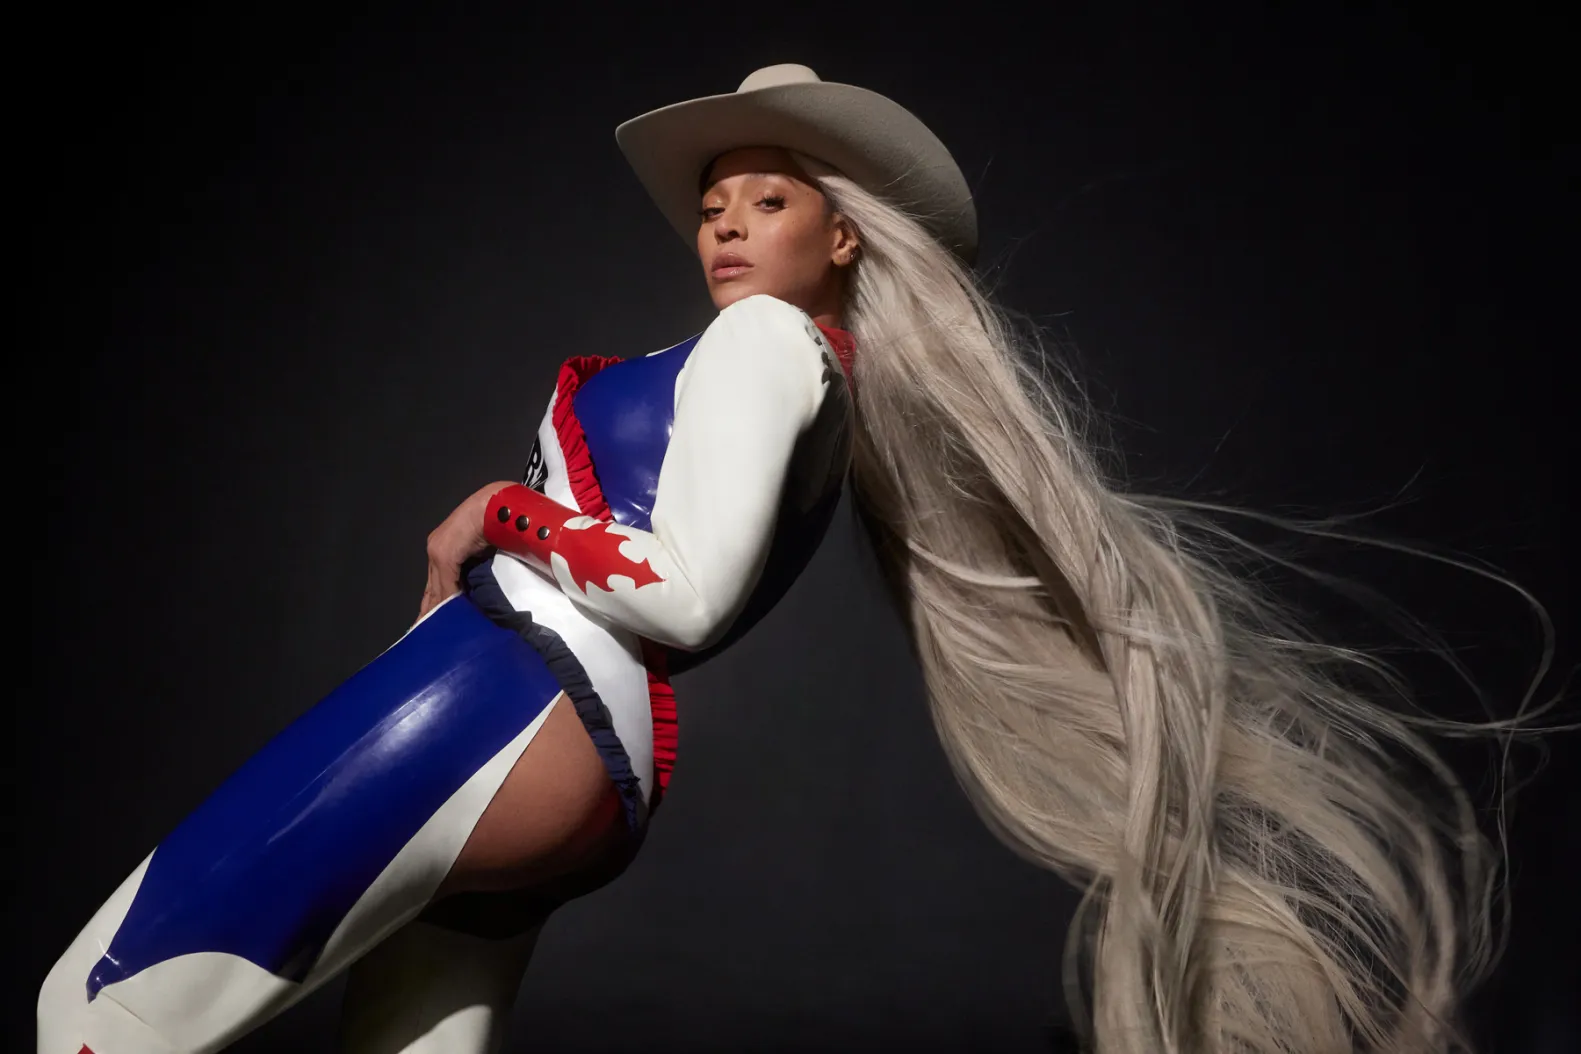 Imagem de Beyoncé para o ensaio fotográfico de COWBOY CARTER. Na fotografia, a artista, uma mulher negra de olhos escuros, aparece com cabelos platinados e longos que vestem um chapéu branco. Ela está de lado para a câmera e veste um chapéu branco com uma vestimenta tradicional de cowboys nas cores branco, azul e vermelho. Ao fundo, o cenário é uma parede cinza que reproduz a sua sombra causada pela iluminação.